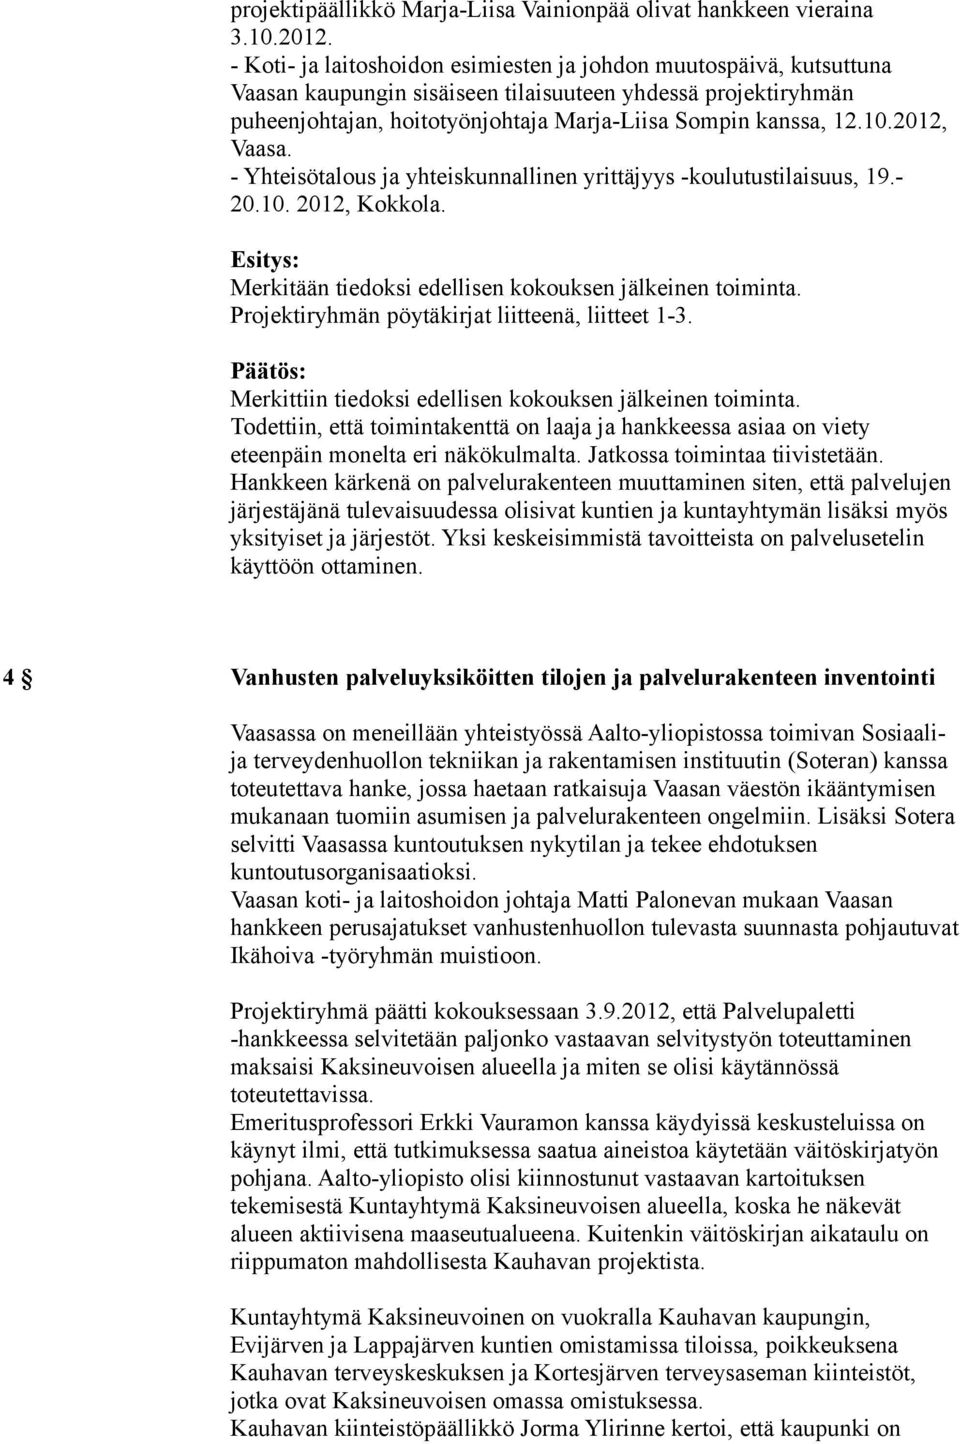 2012, Vaasa. - Yhteisötalous ja yhteiskunnallinen yrittäjyys -koulutustilaisuus, 19.- 20.10. 2012, Kokkola. Merkitään tiedoksi edellisen kokouksen jälkeinen toiminta.